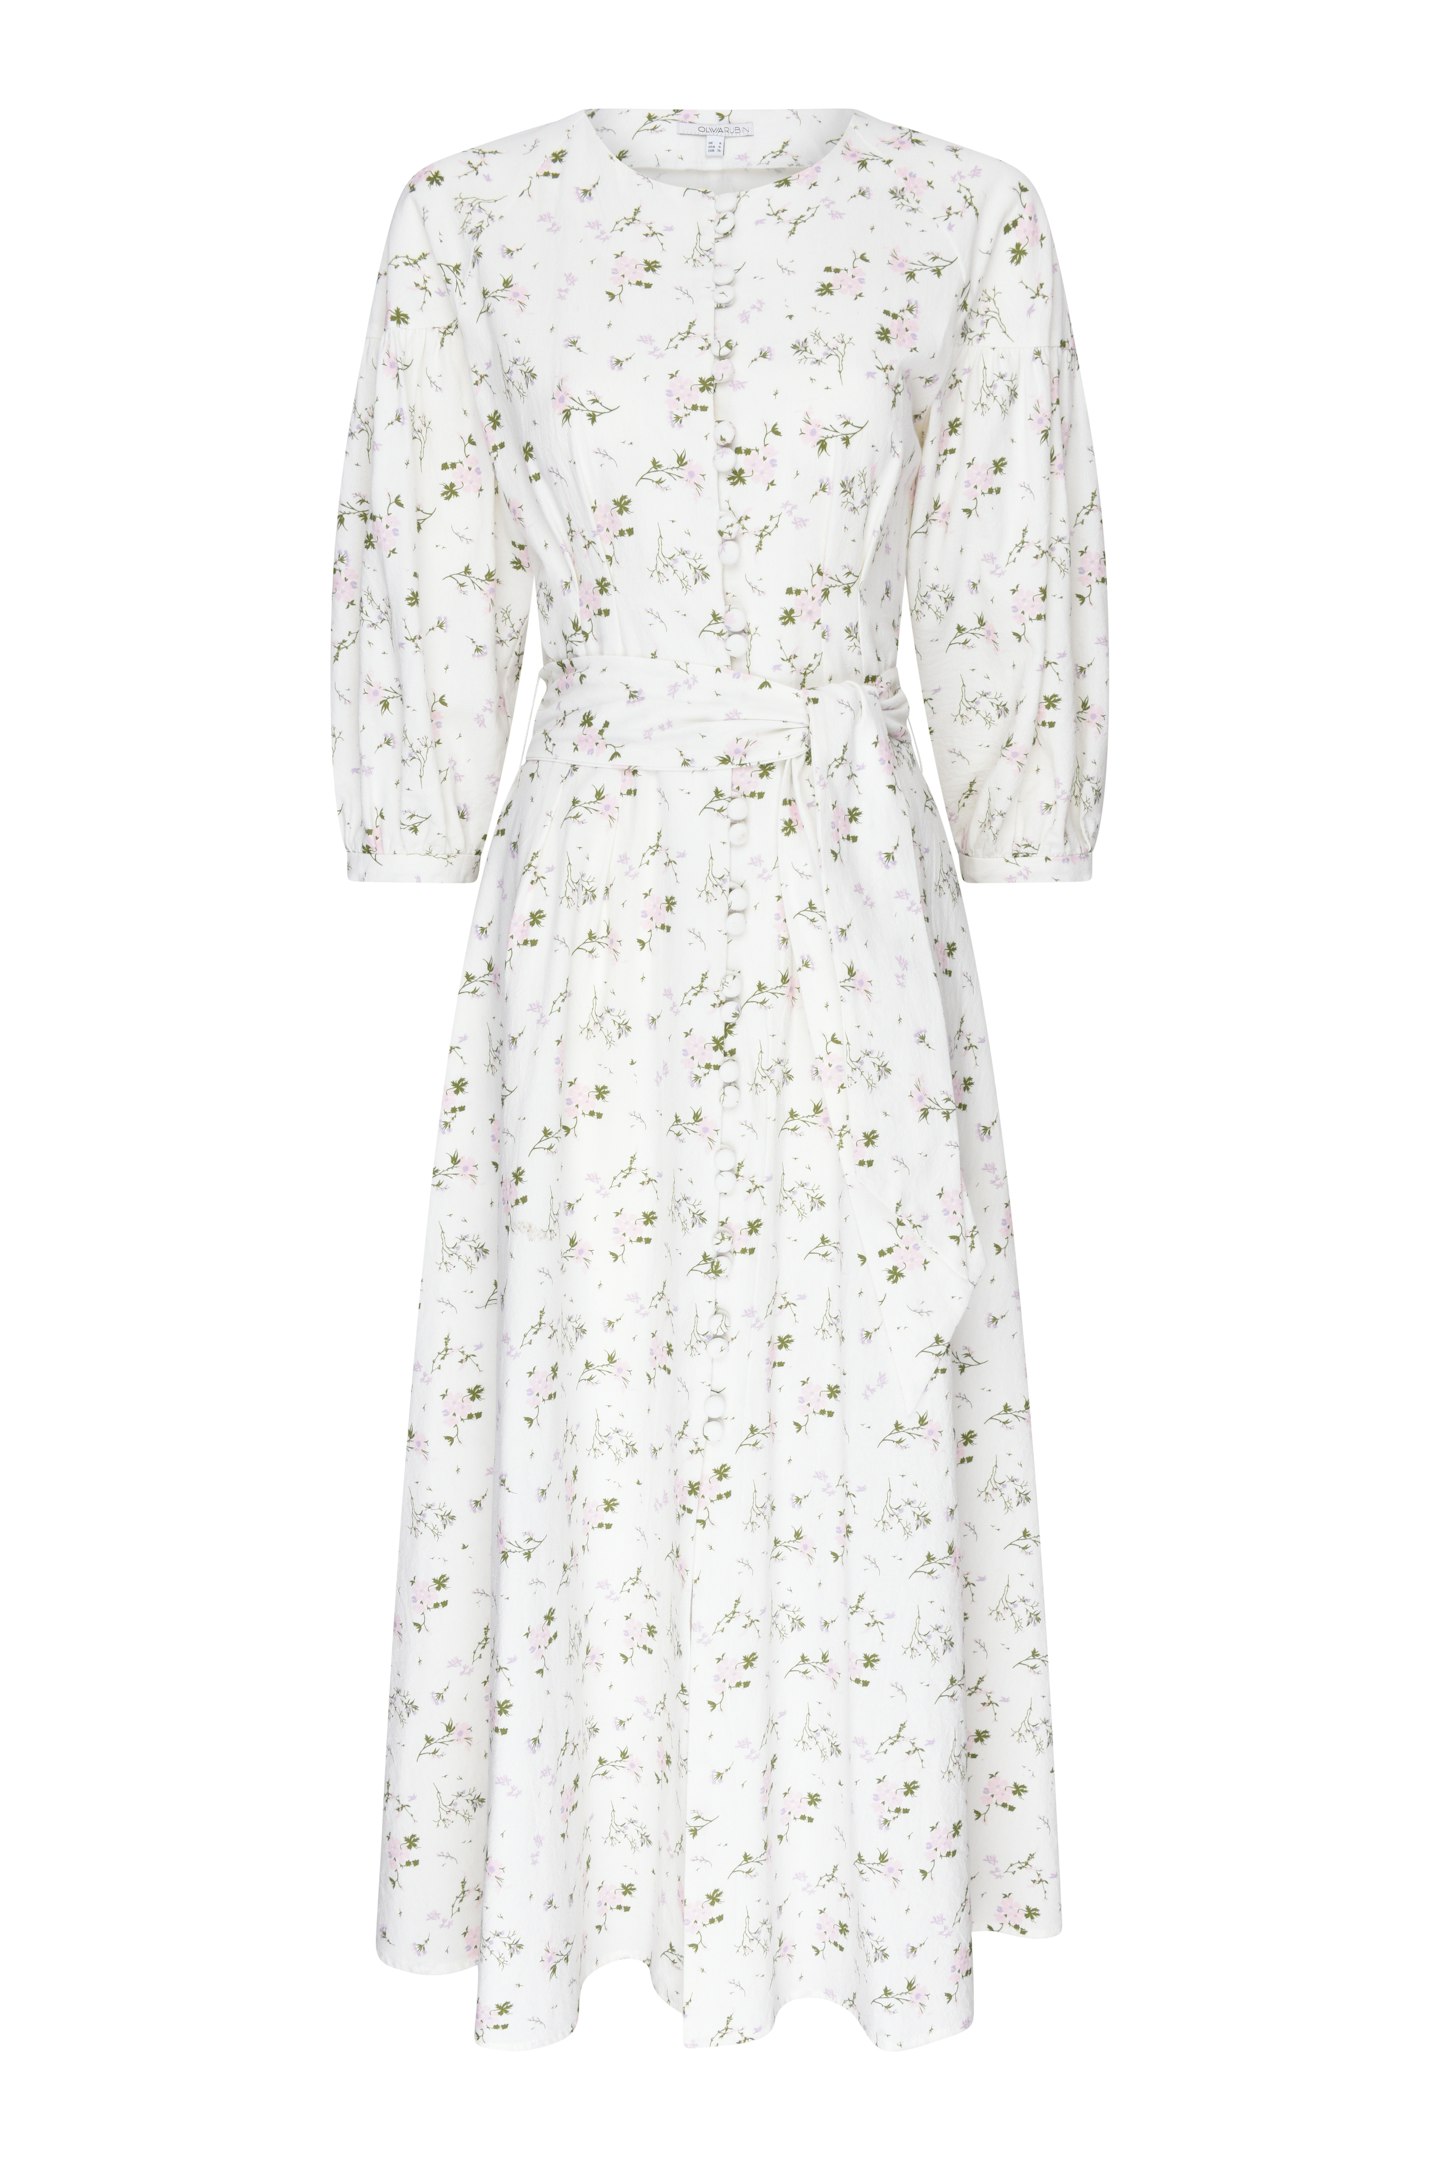 Cotton Floral Dress, £350